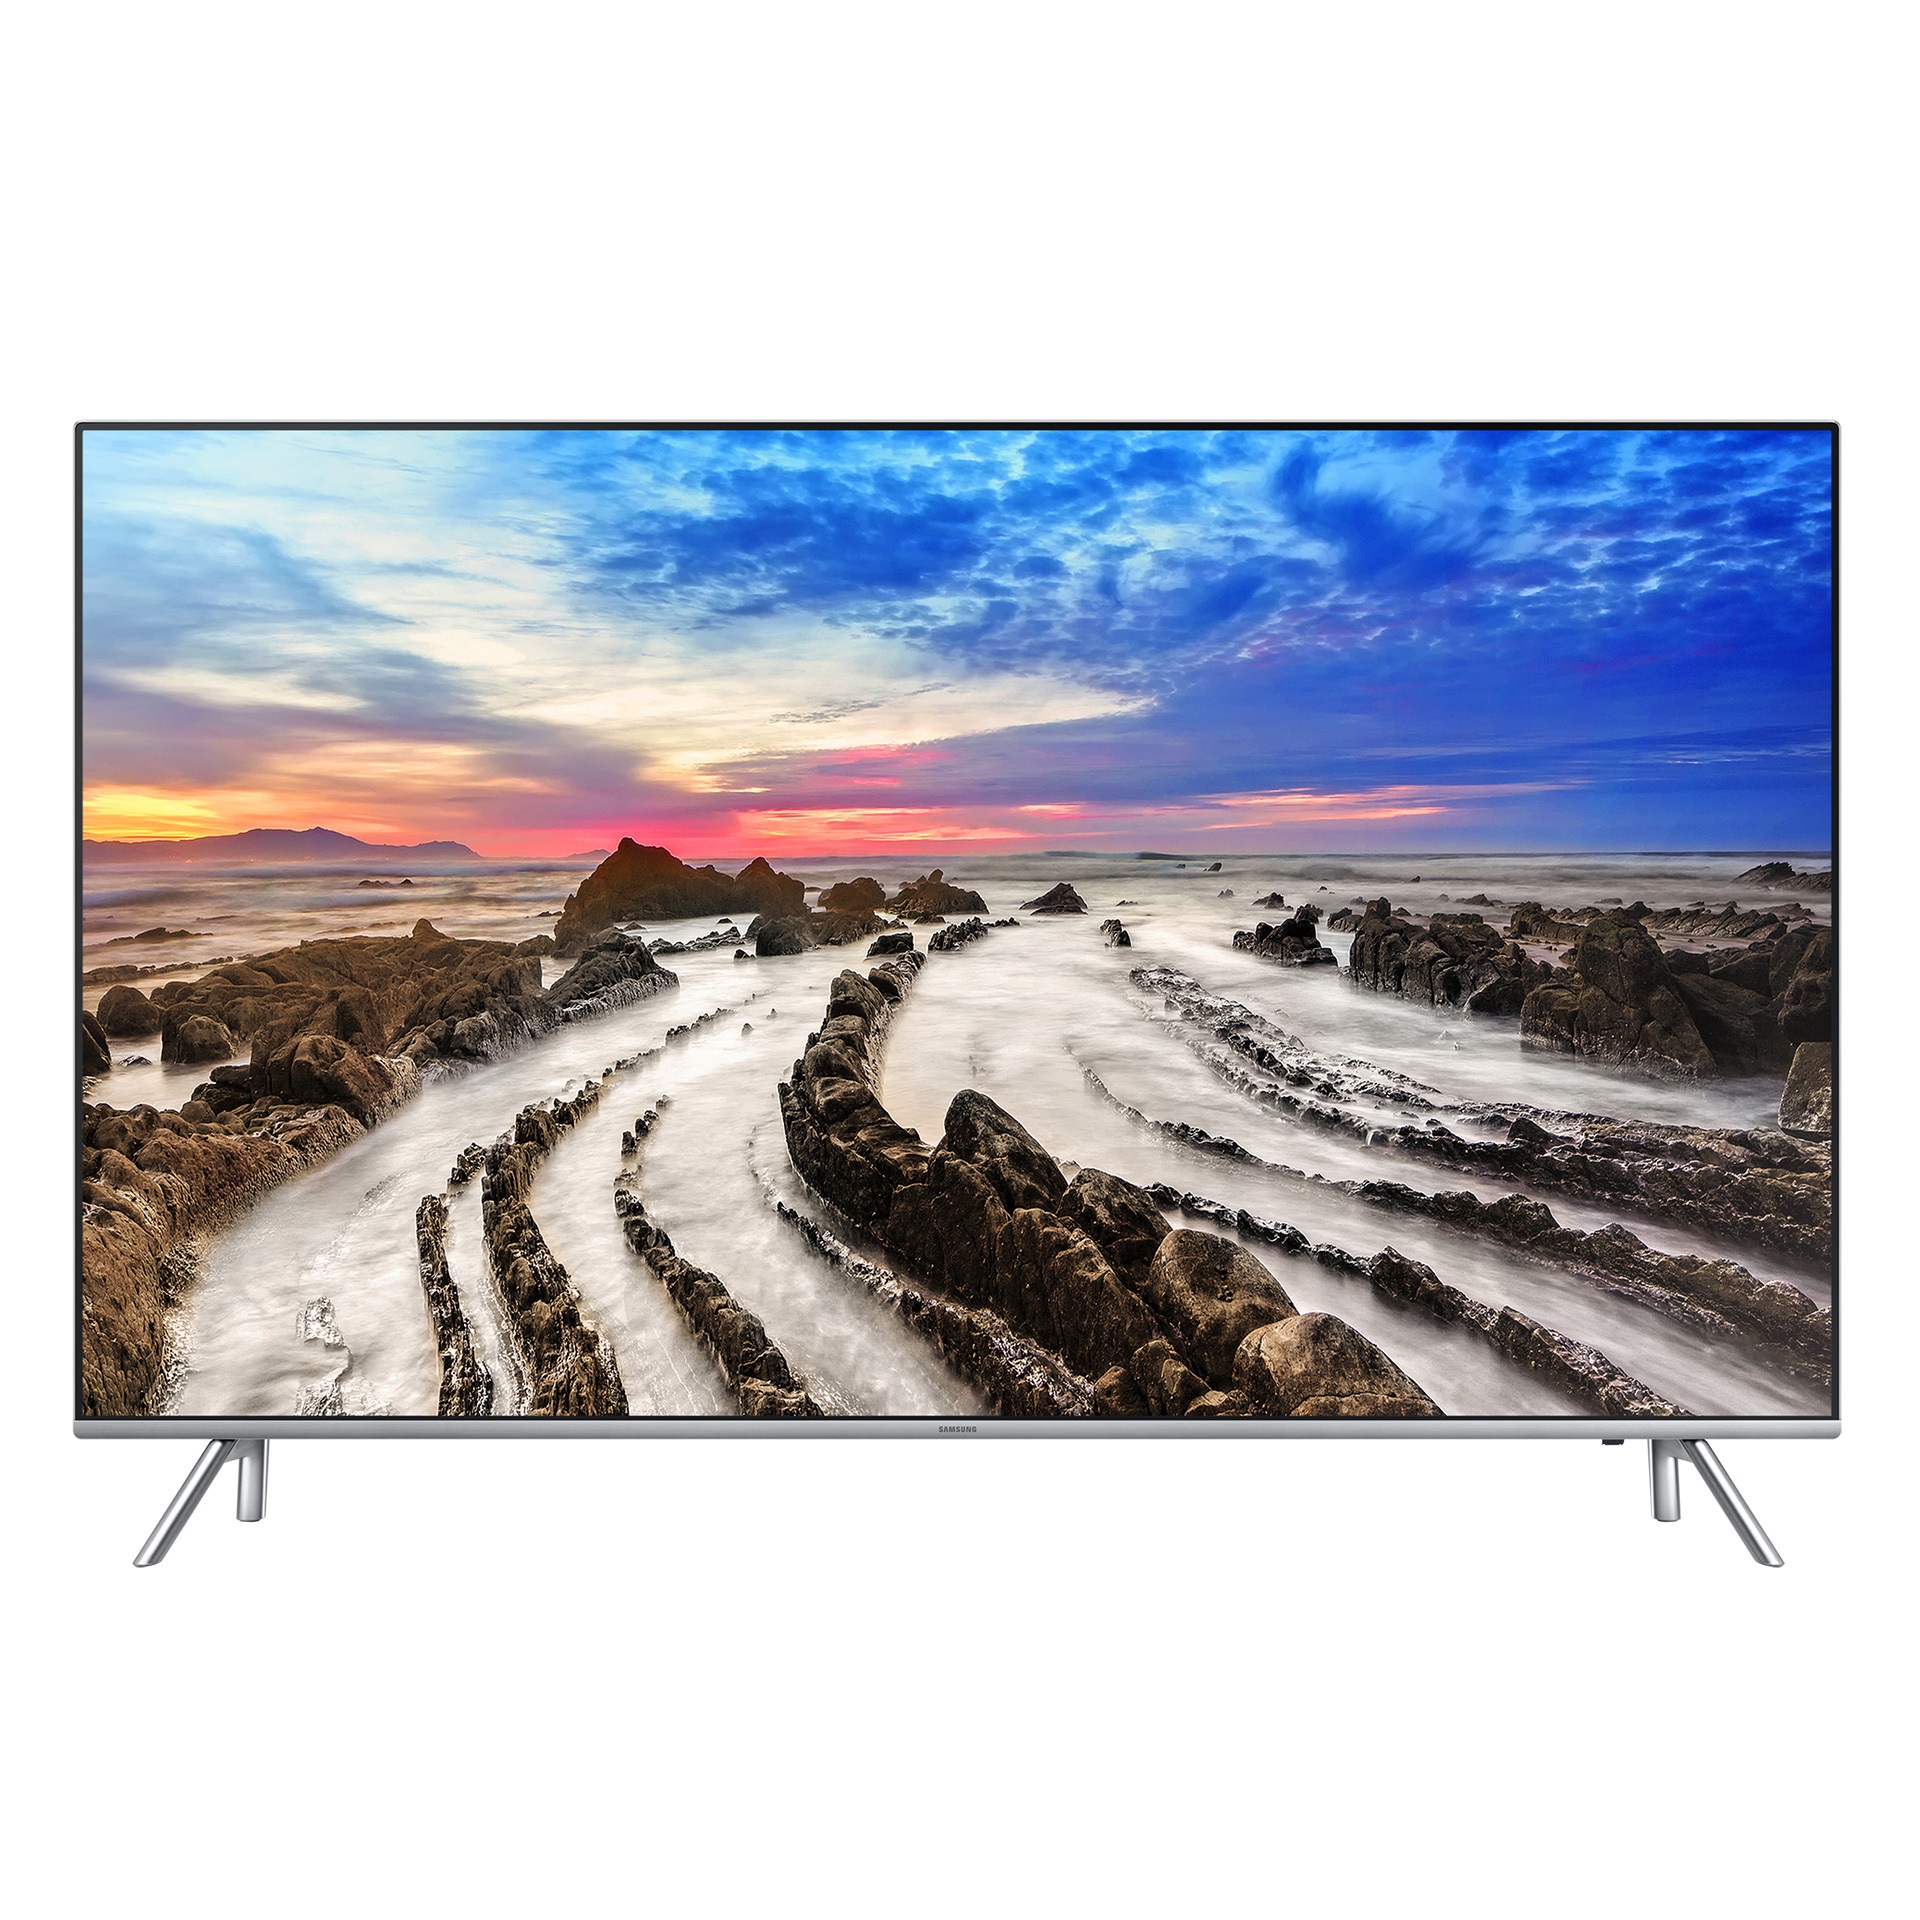 تلویزیون هوشمند سامسونگ مدل ۵۵NU8900 سایز ۵۵ اینچ